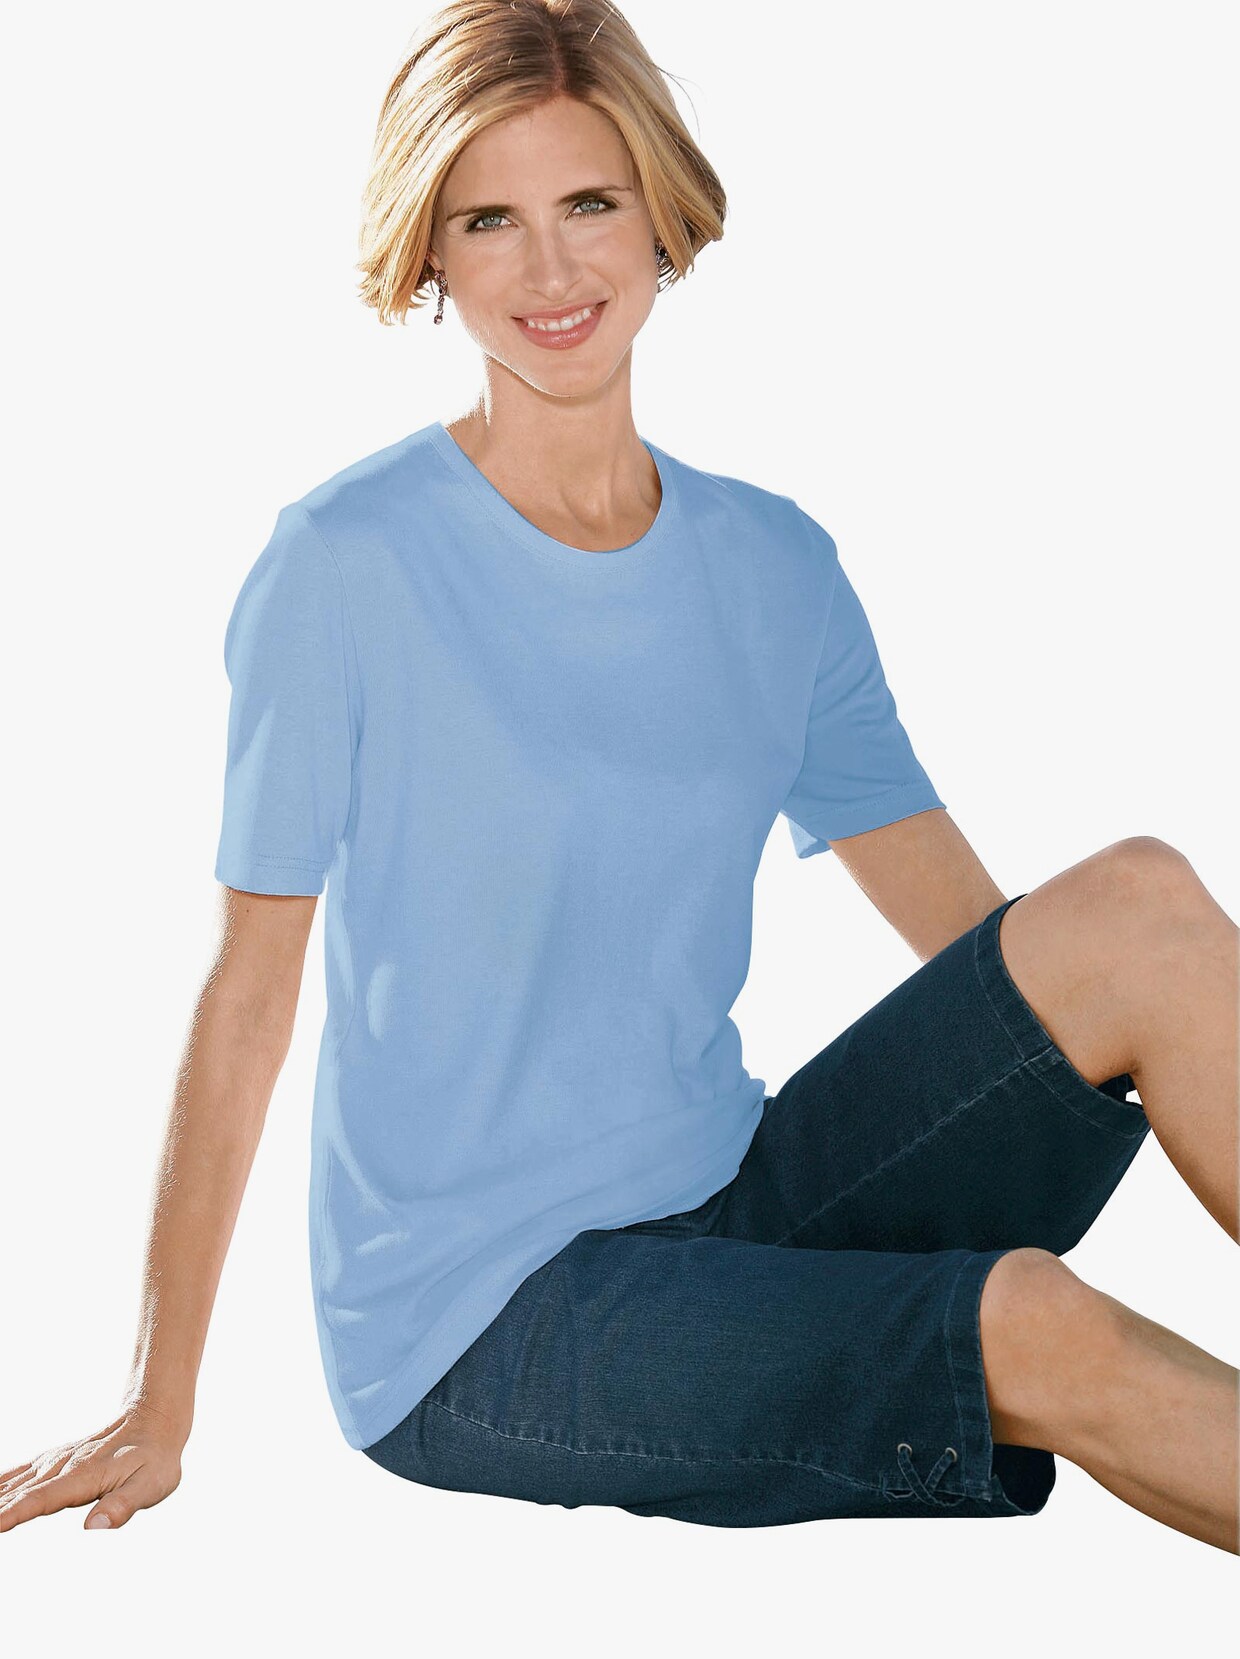 Tričko s krátkým rukávem - modrá